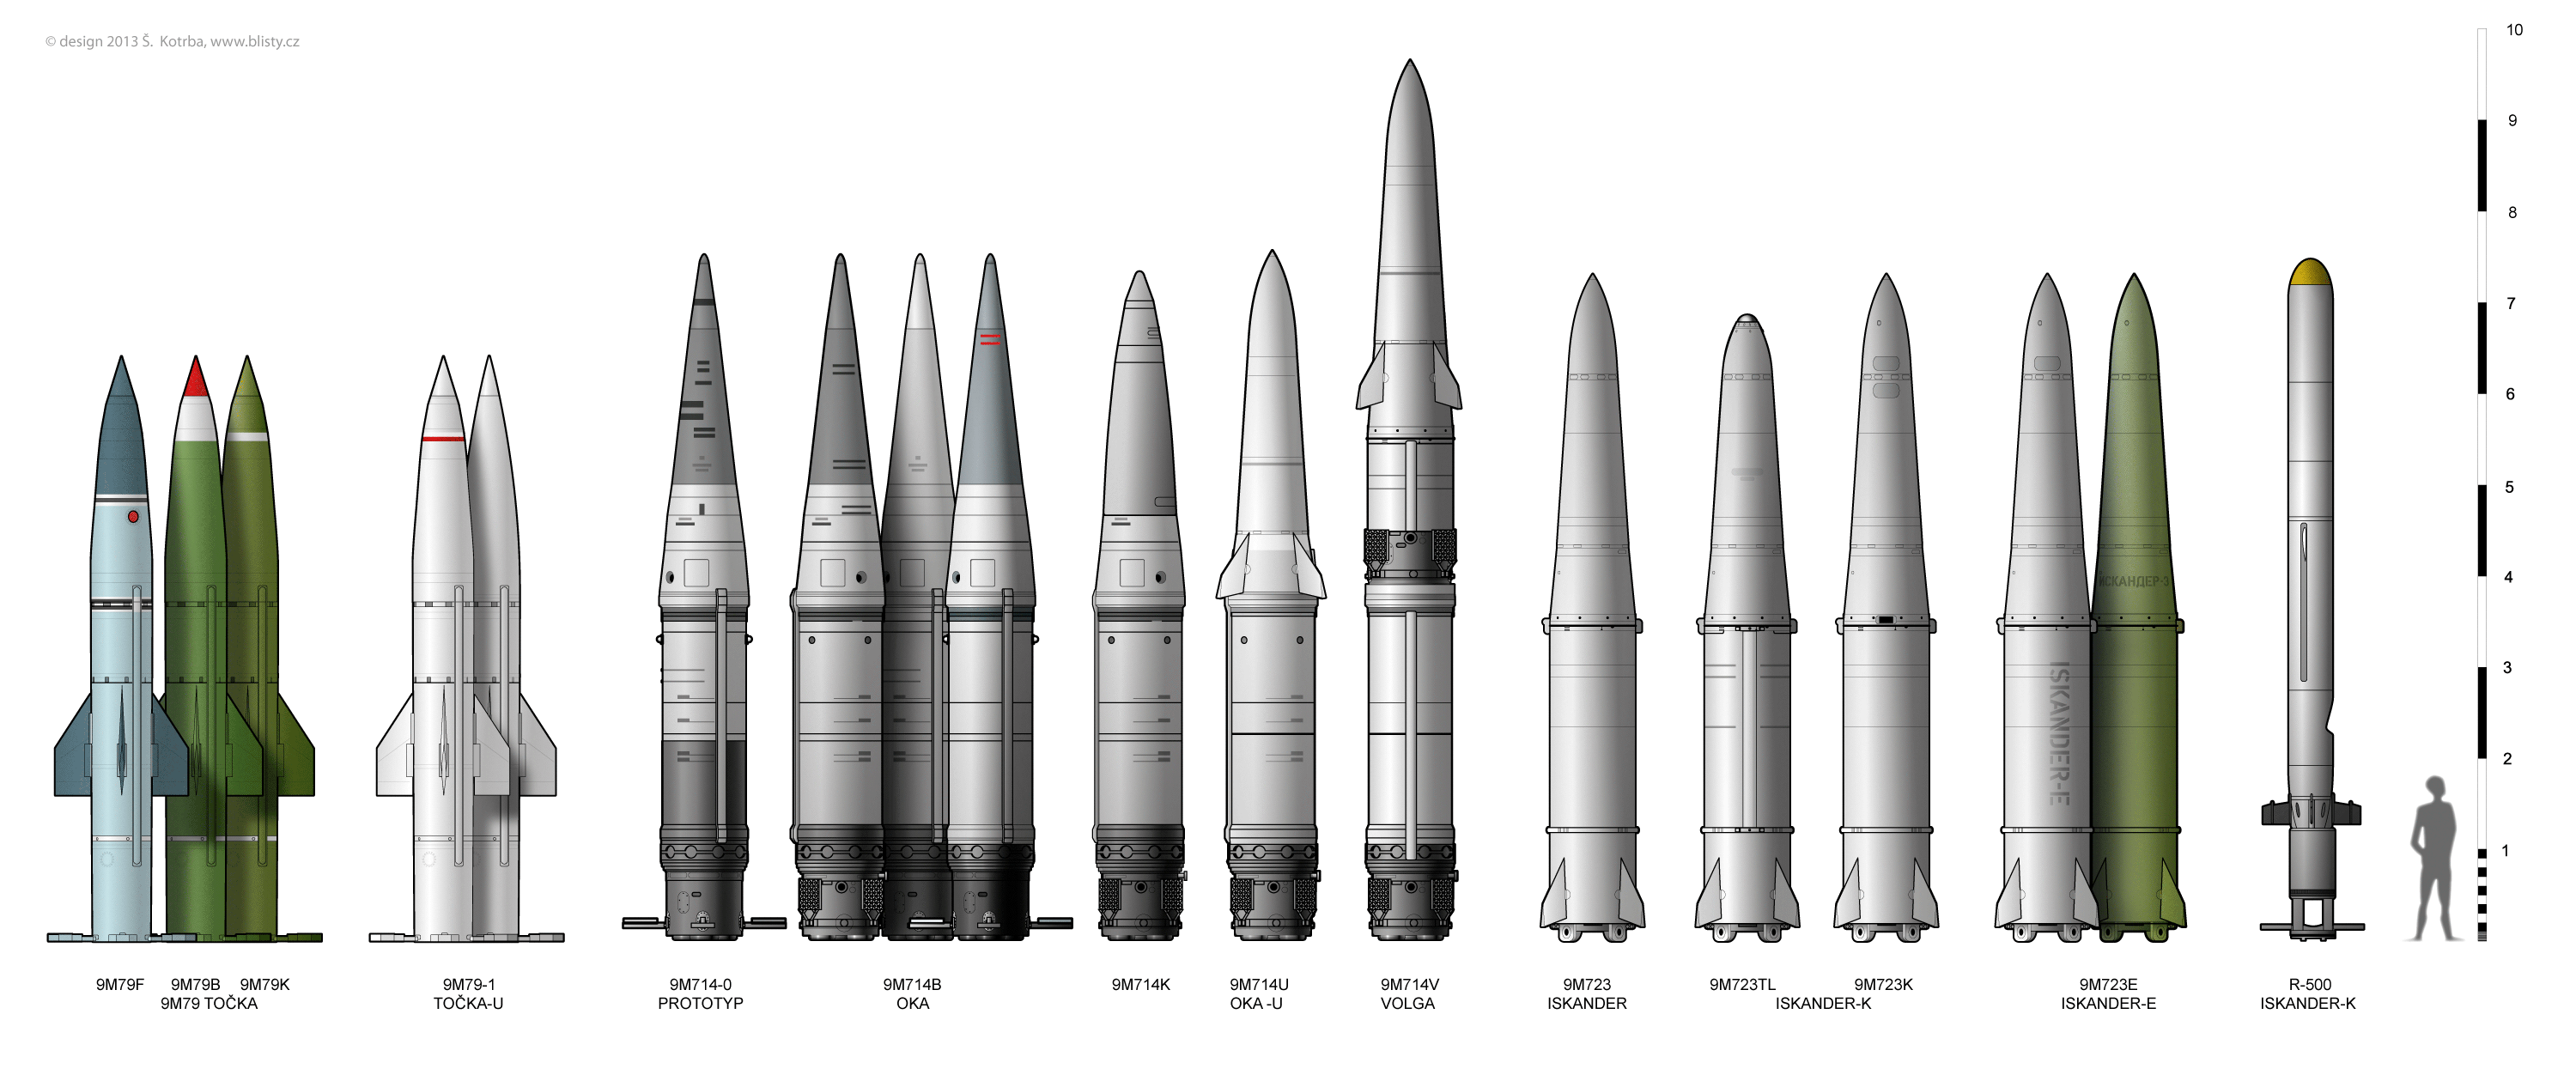 9k720 iskander (ss-26) | missile threat